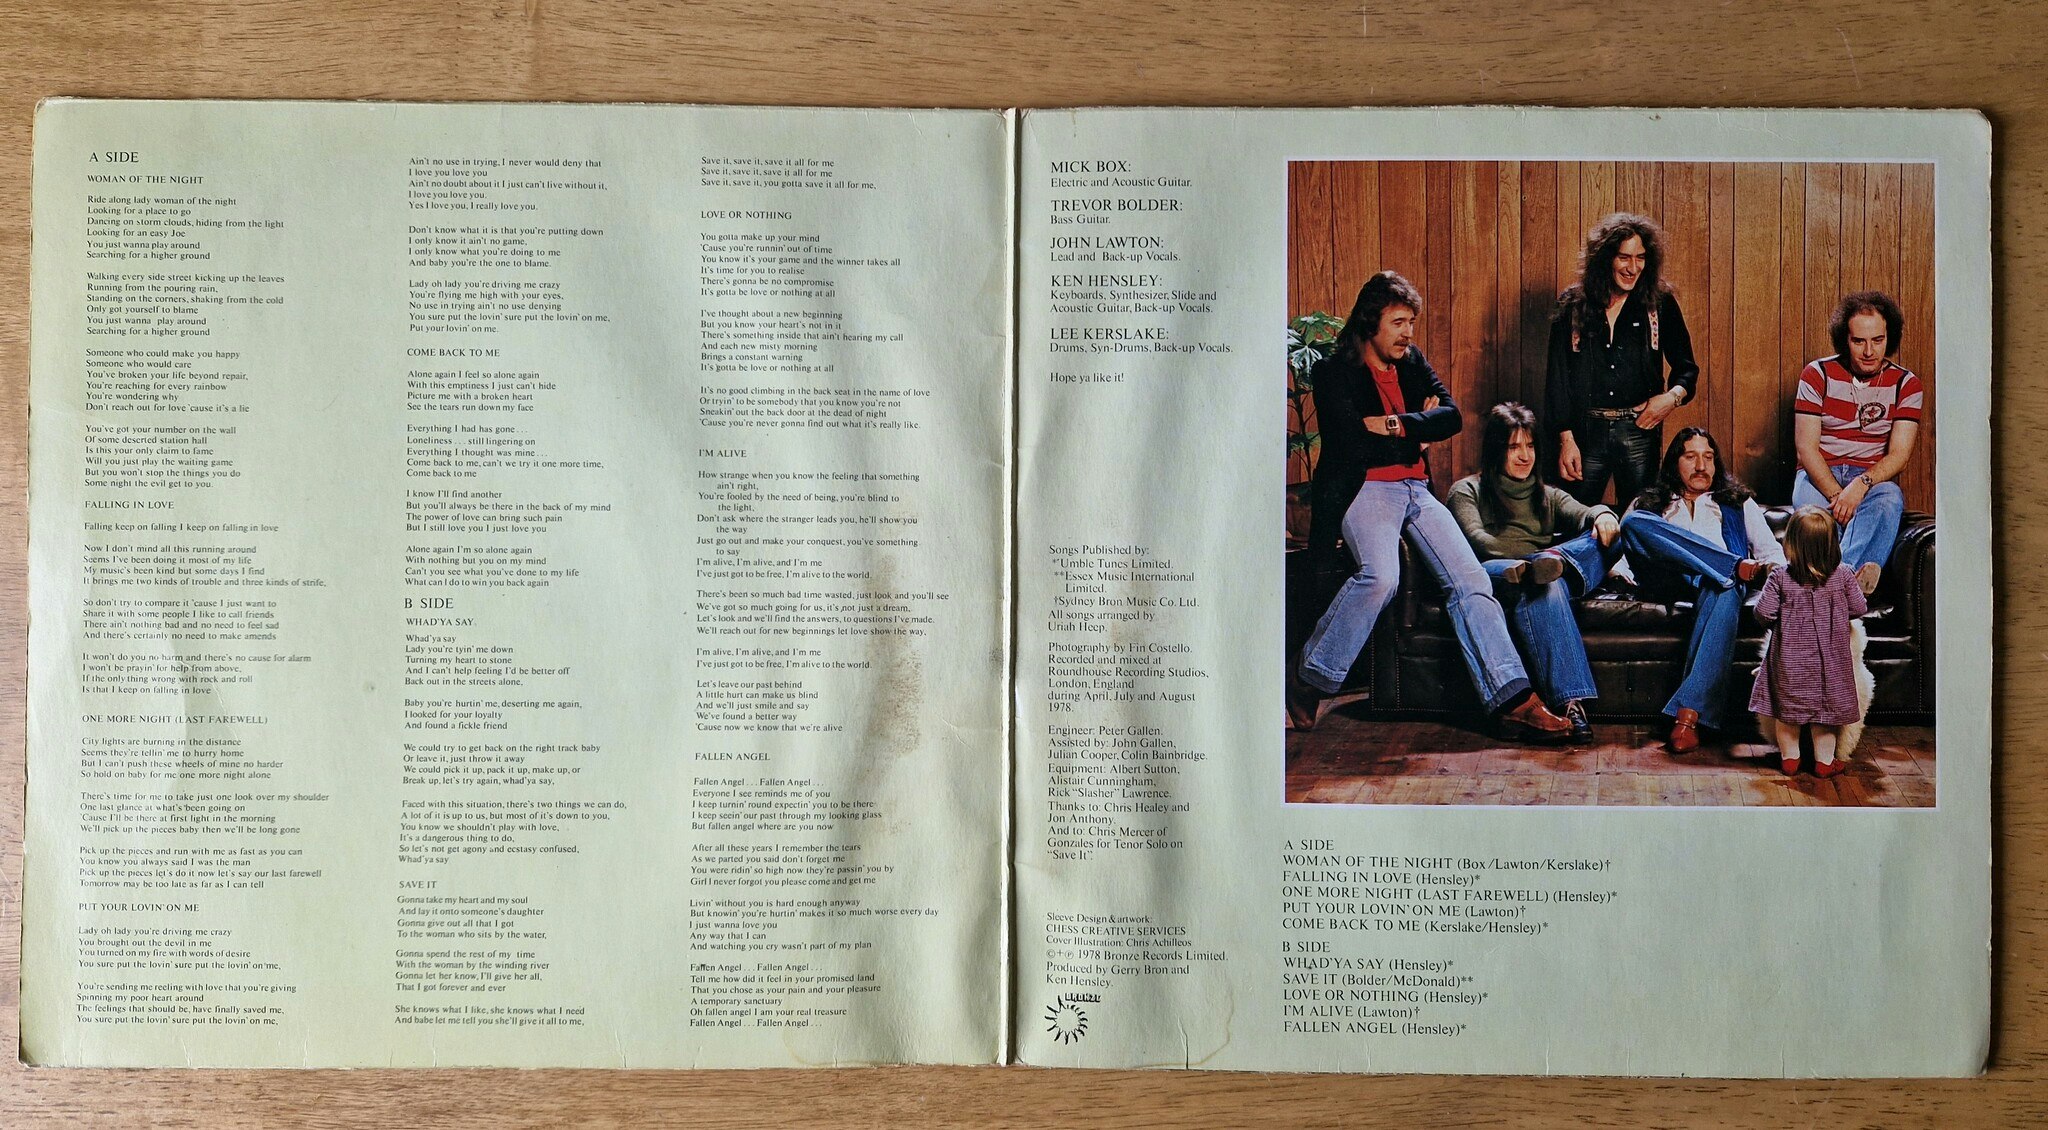 Uriah Heep, Fallen angel. Vinyl LP